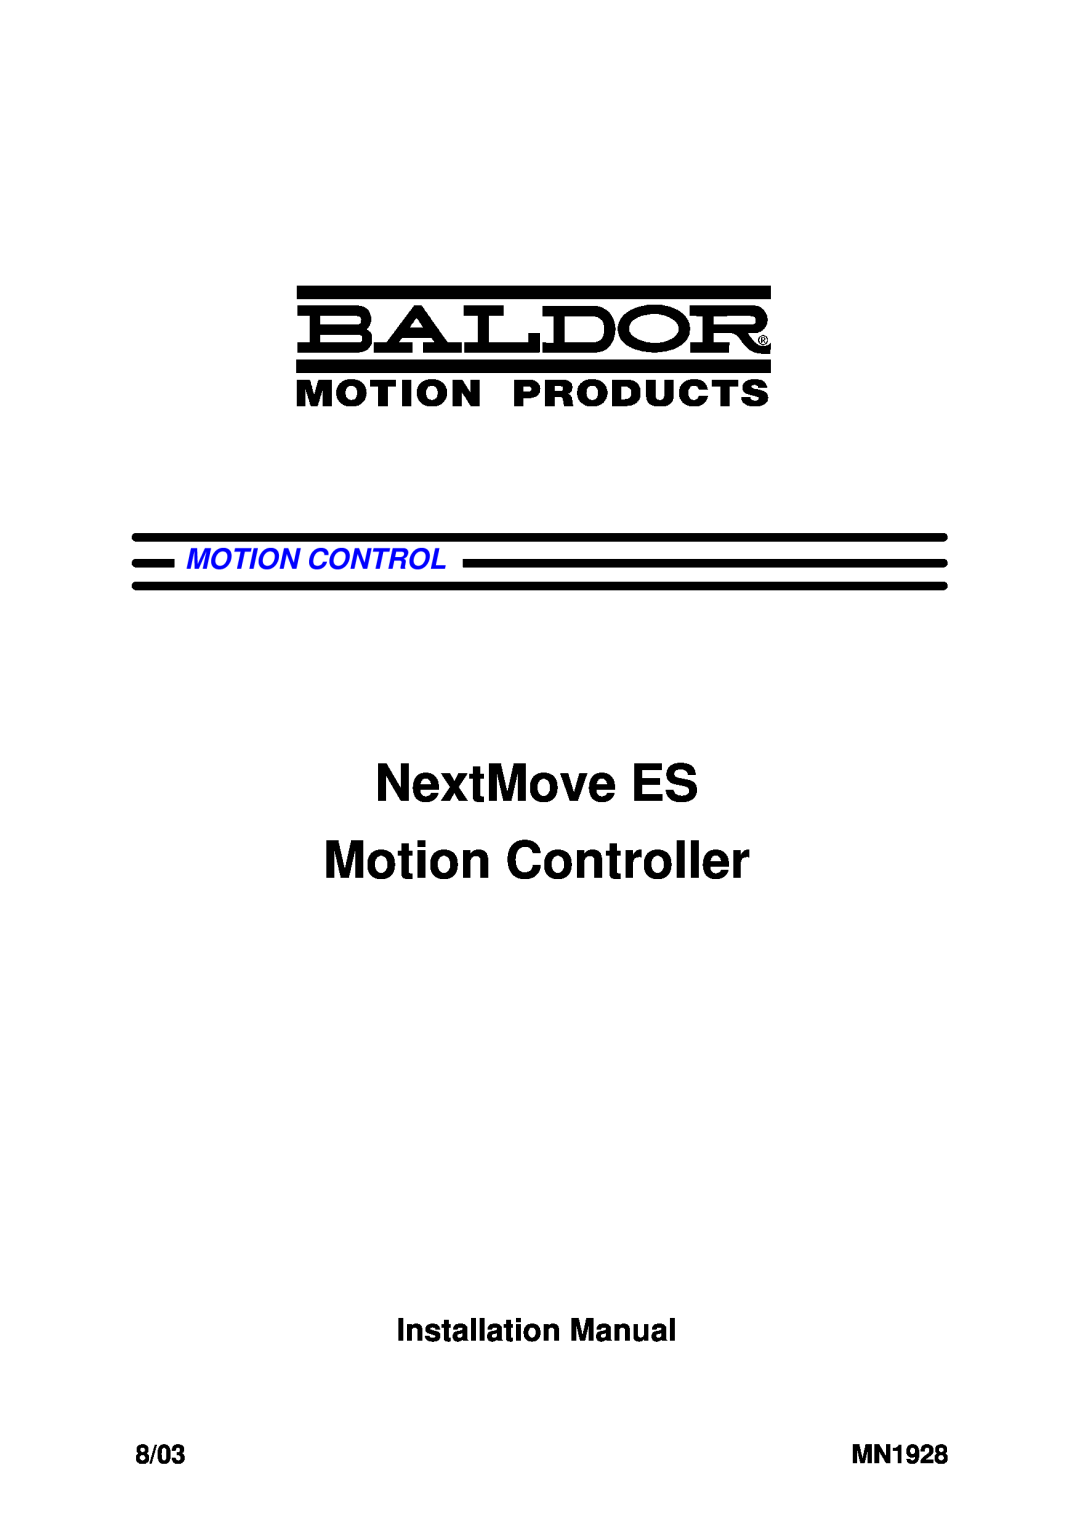 Baldor MN1928 installation manual NextMove ES Motion Controller, Installation Manual, 8/03 